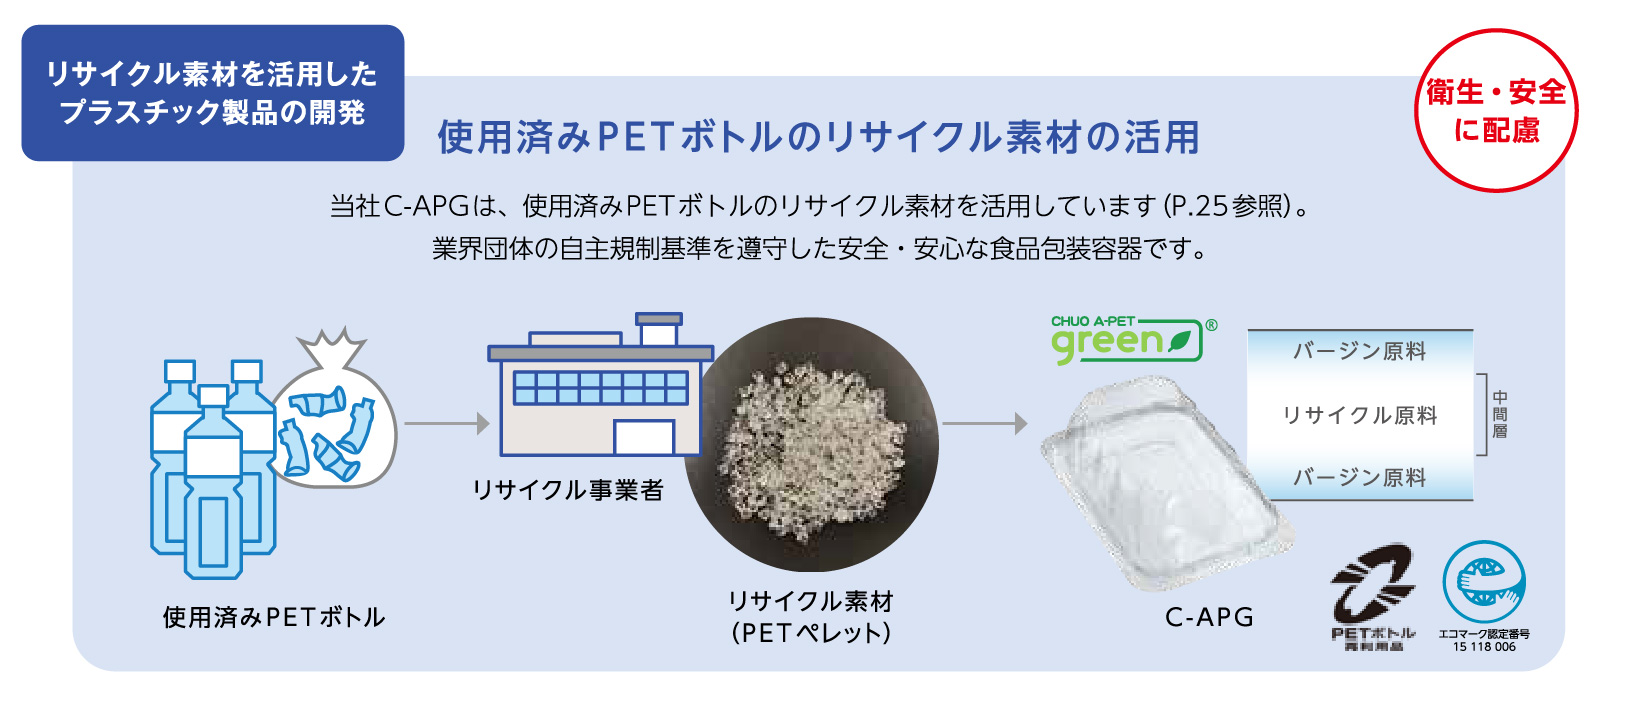 使用済みPET ボトルのリサイクル素材の活用